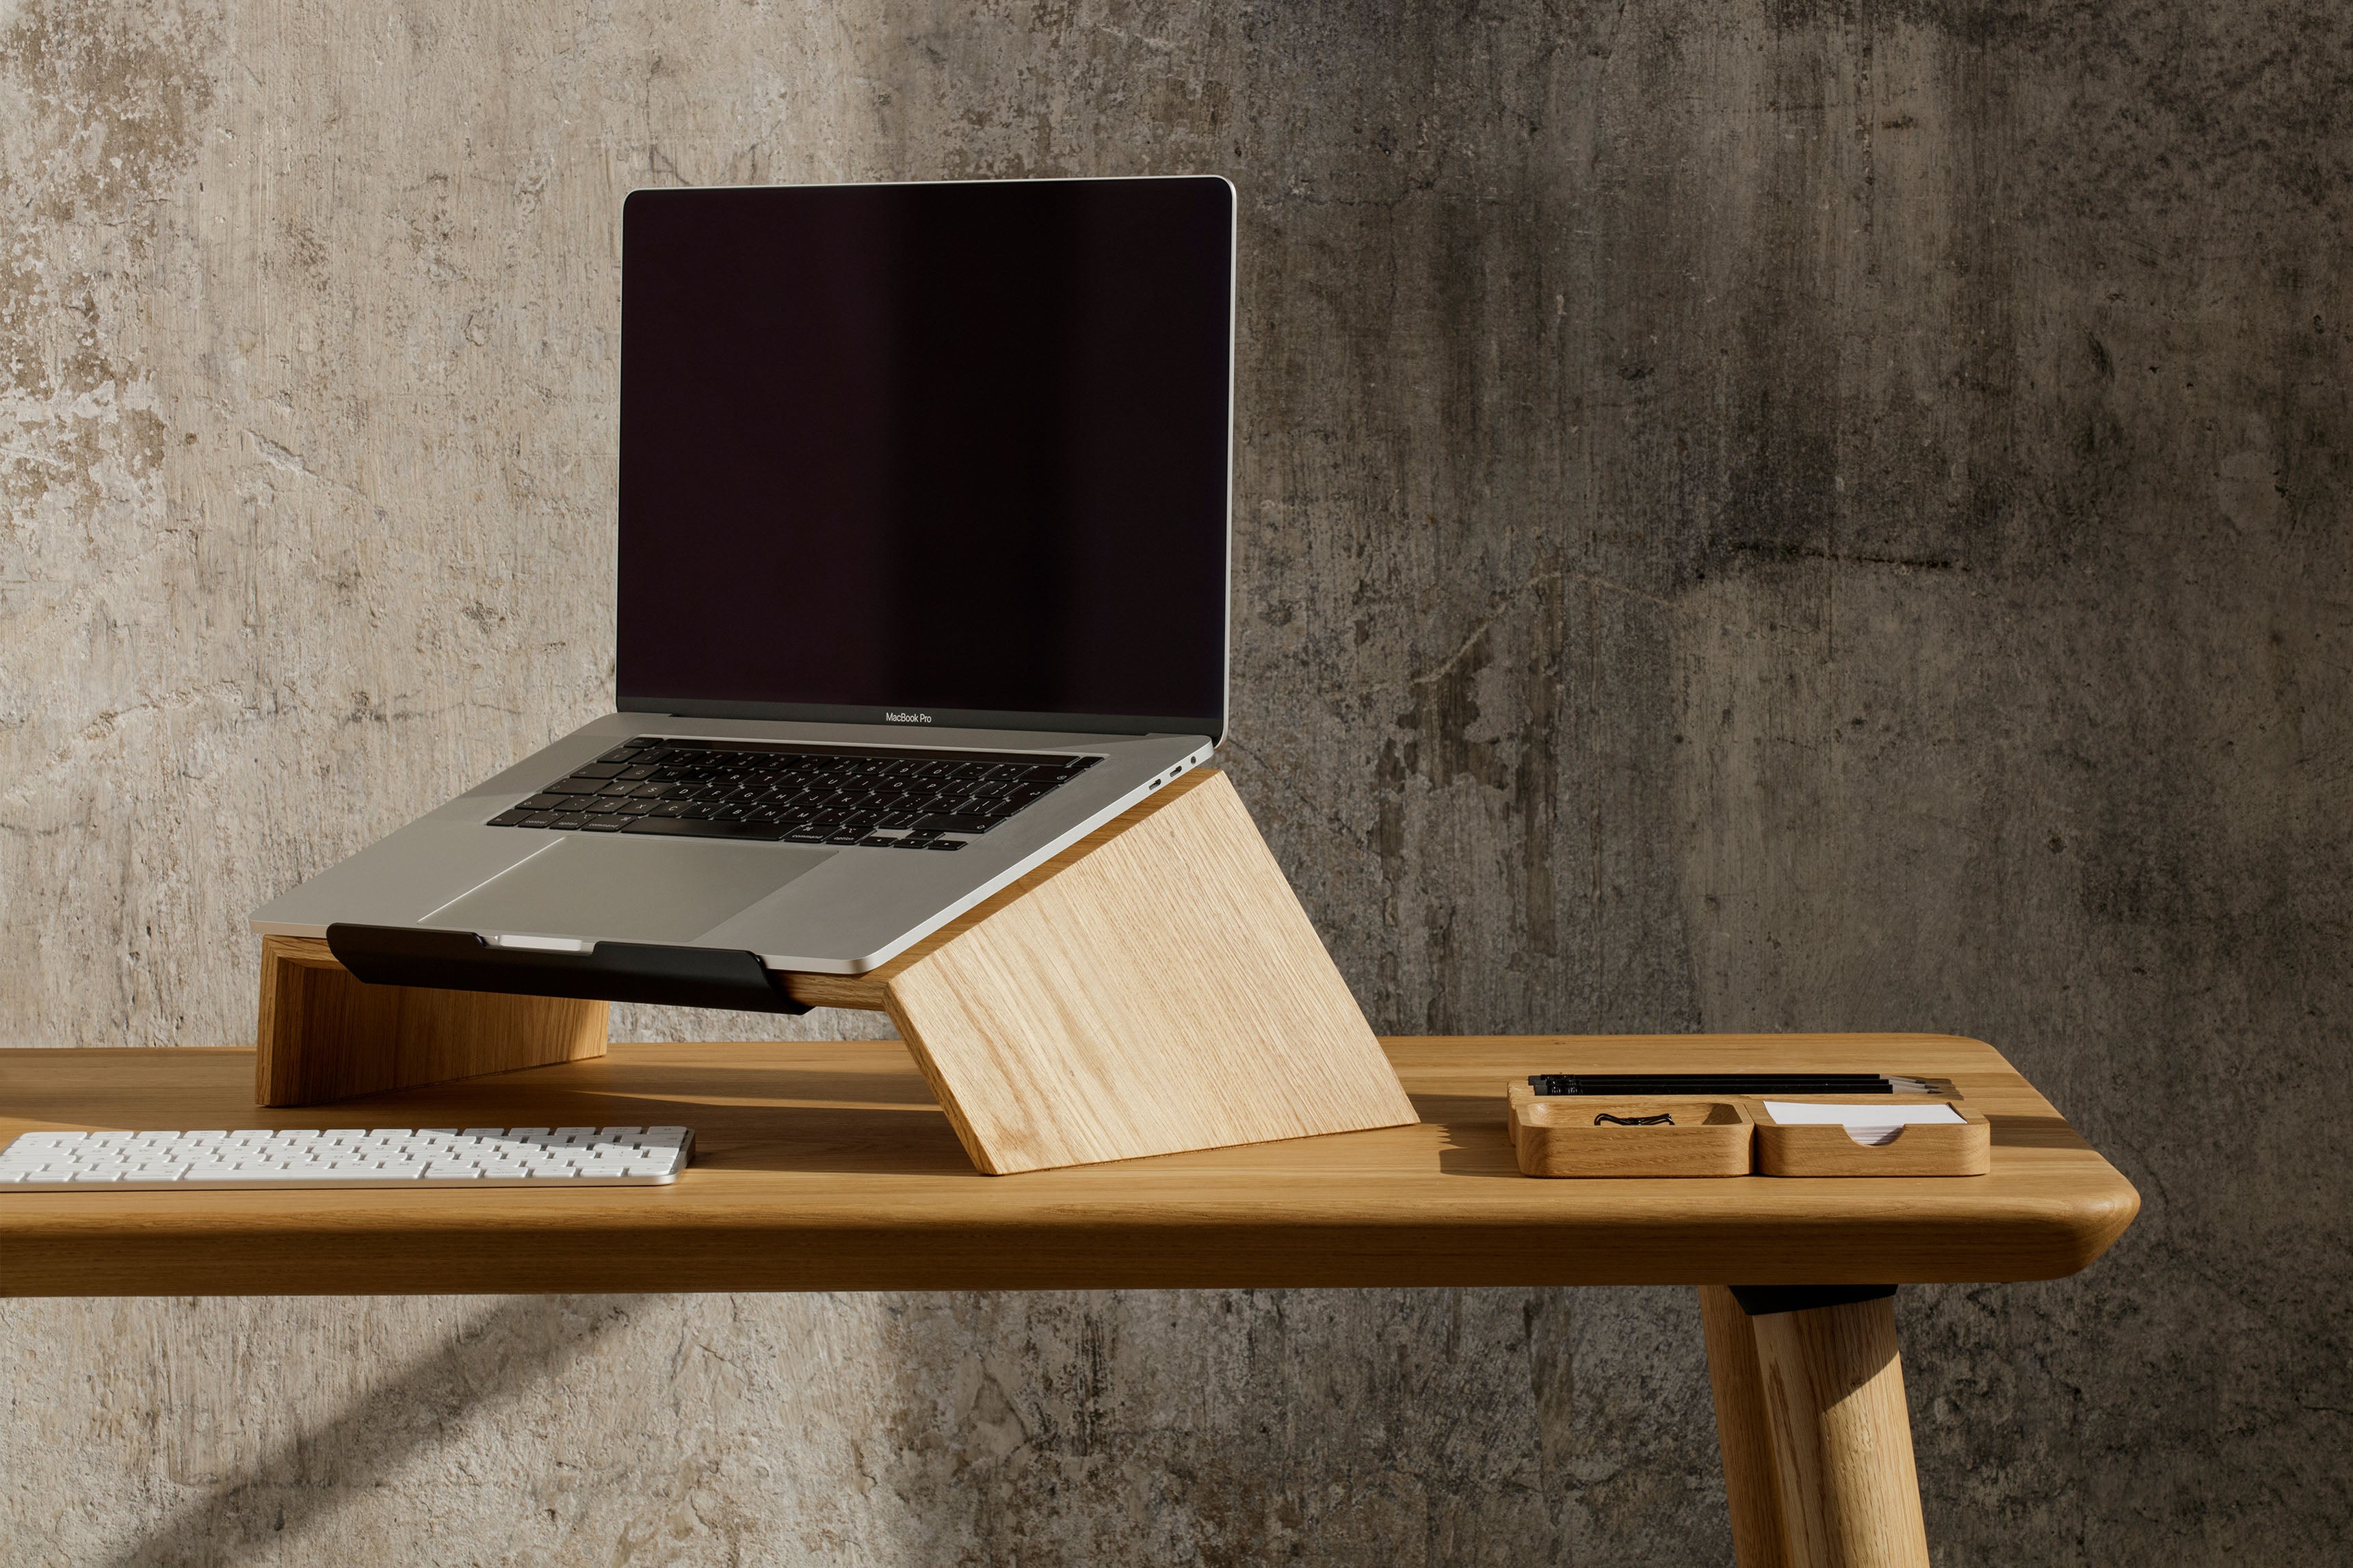 MODIDSTU Grand support pour double écran, étagère de bureau en bois massif  avec pieds en liège écologique pour ordinateur portable, support de